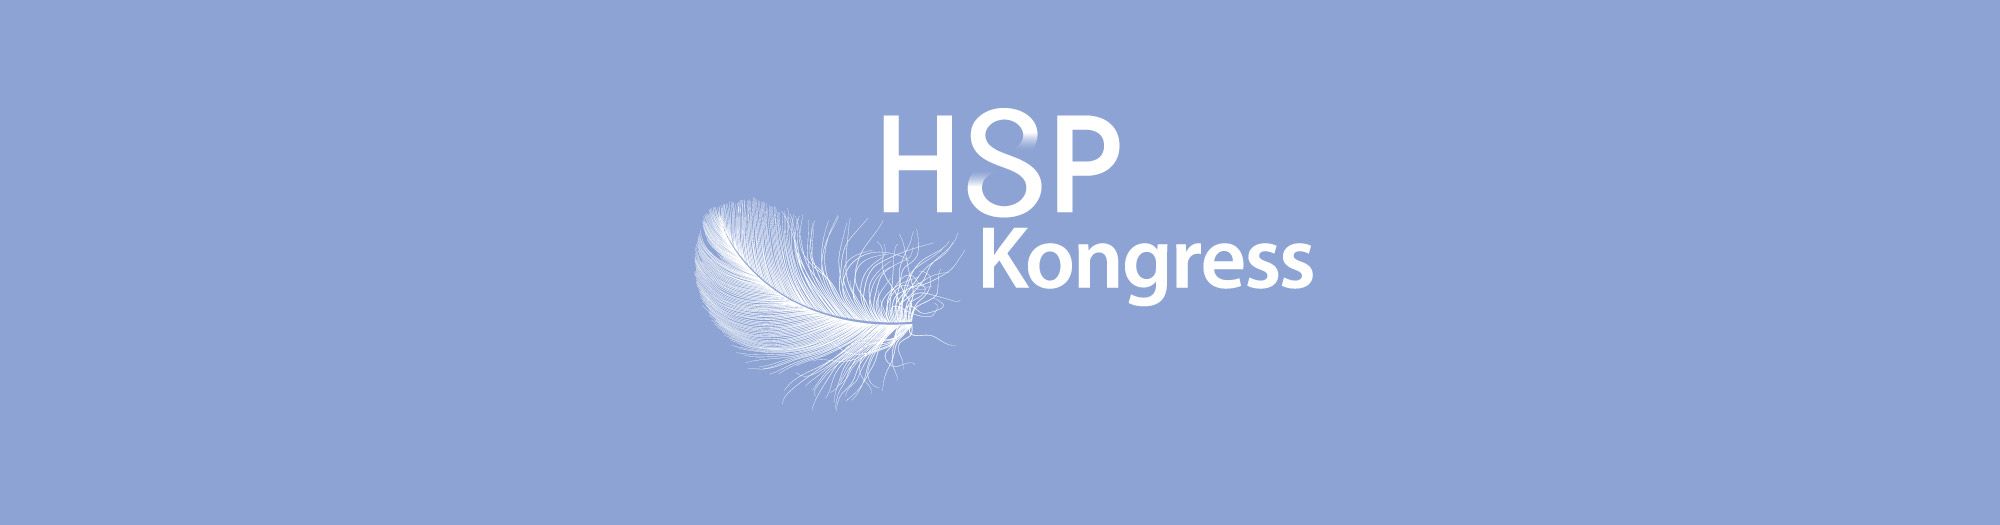 HSP Kongress